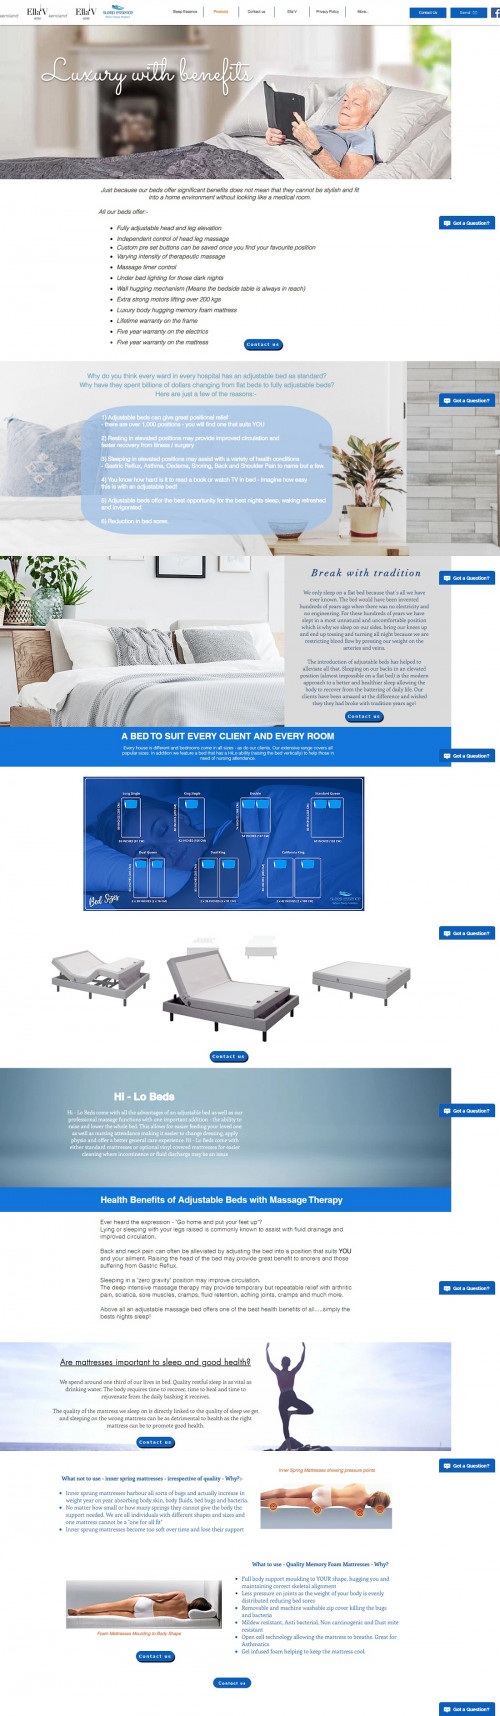 Medical-beds.jpg